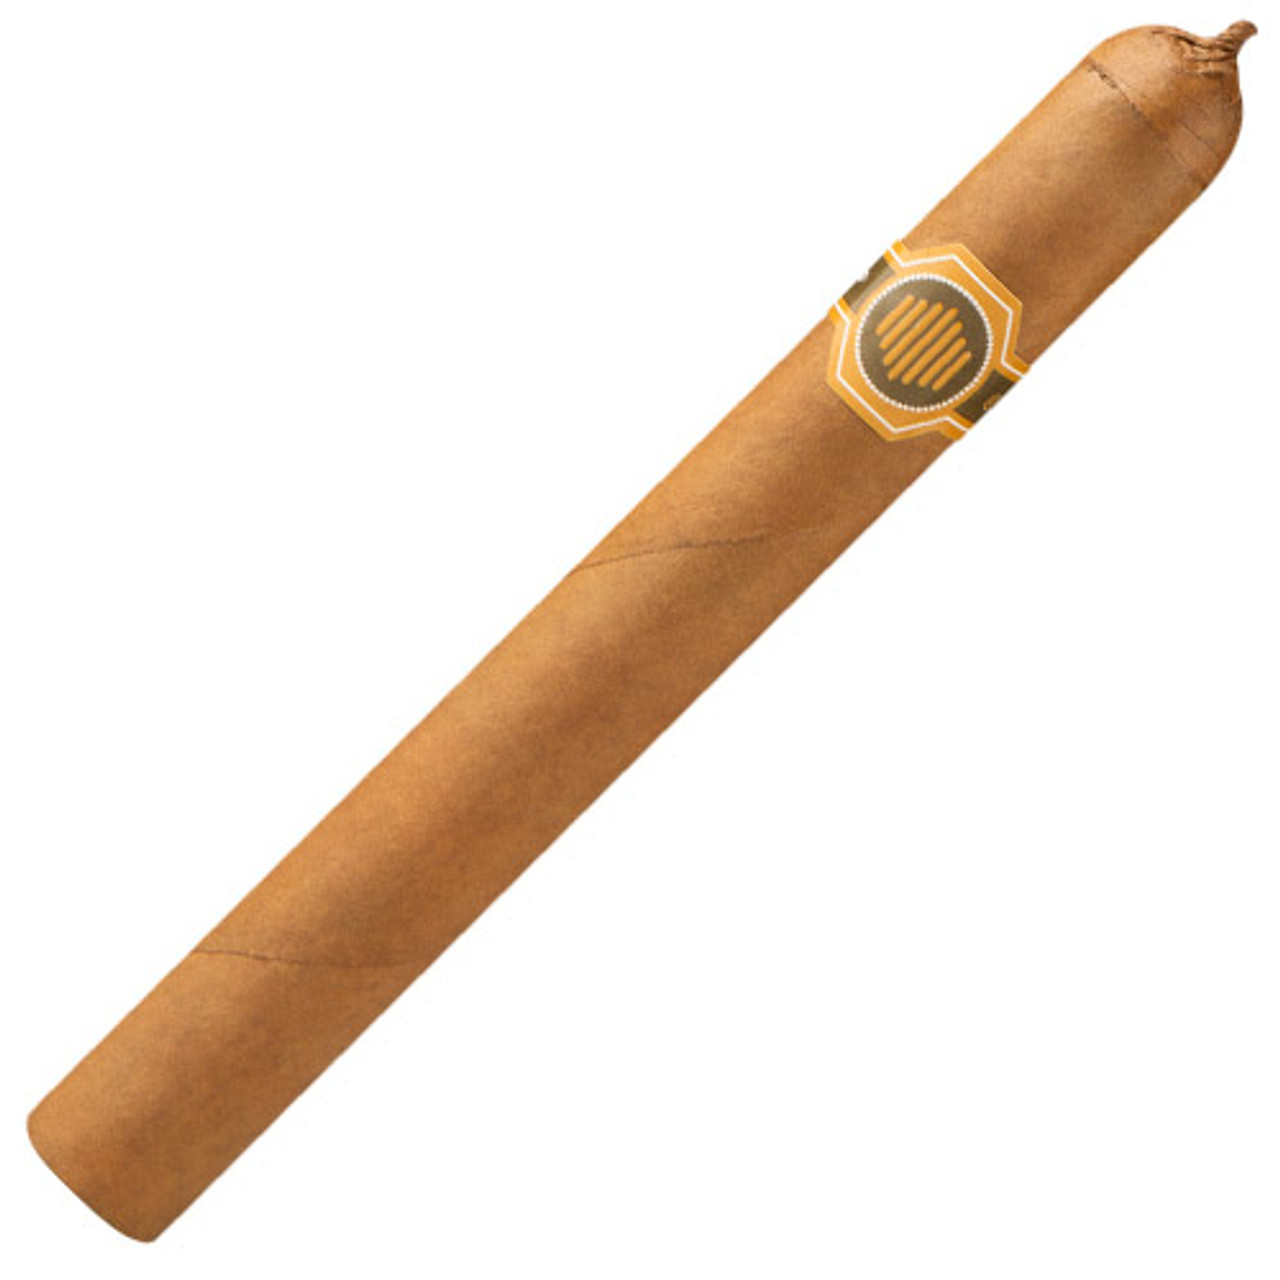 Warped La Colmena Amado No. 44 Cigars - 5.5 x 44 (Box of 10)